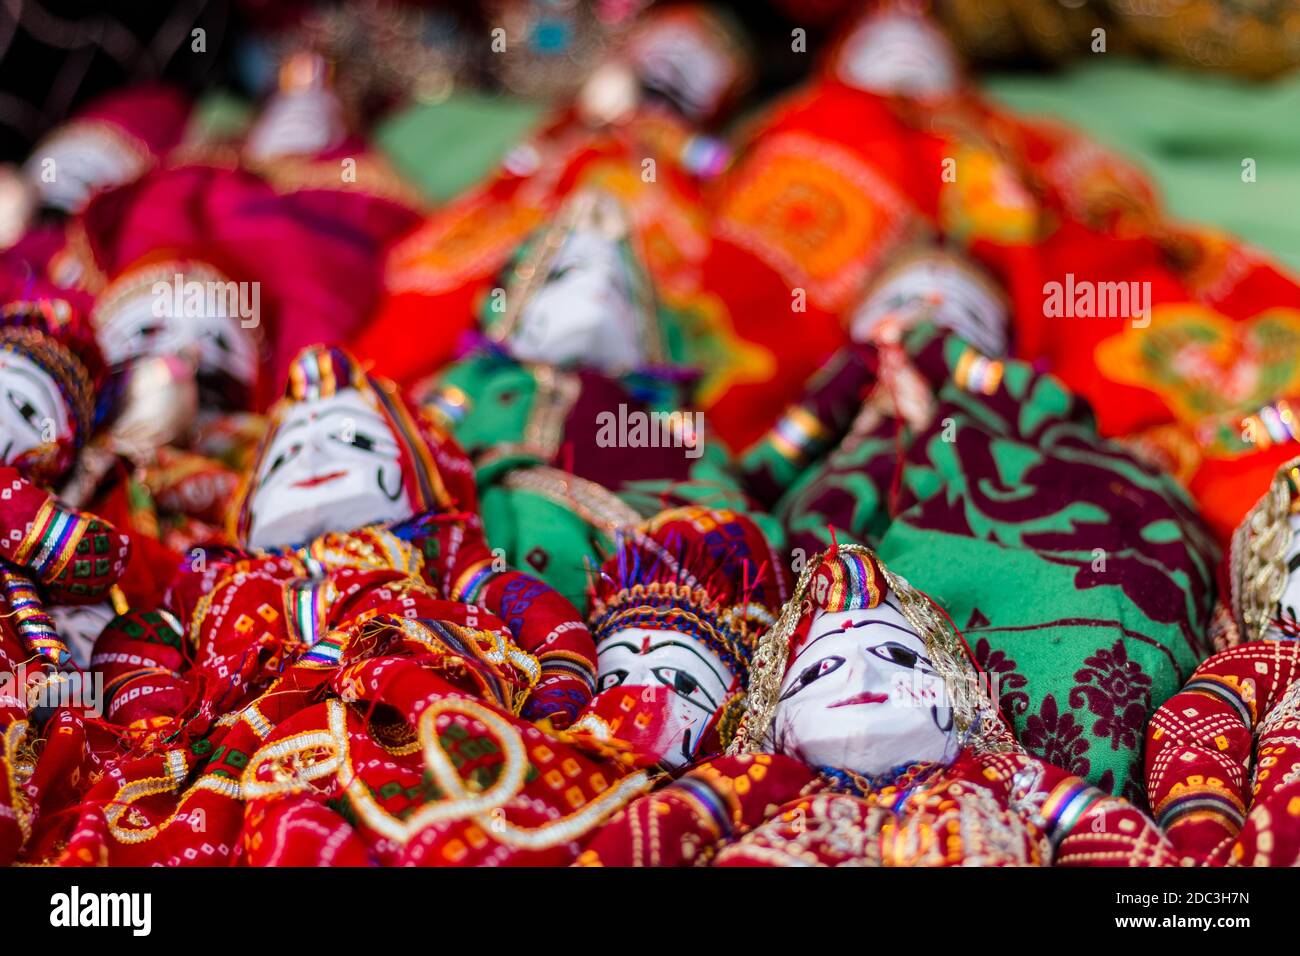 Des marionnettes Rajasthani artisanales colorées (Kathputli) ont été exposées en magasin à New Delhi, en Inde Banque D'Images